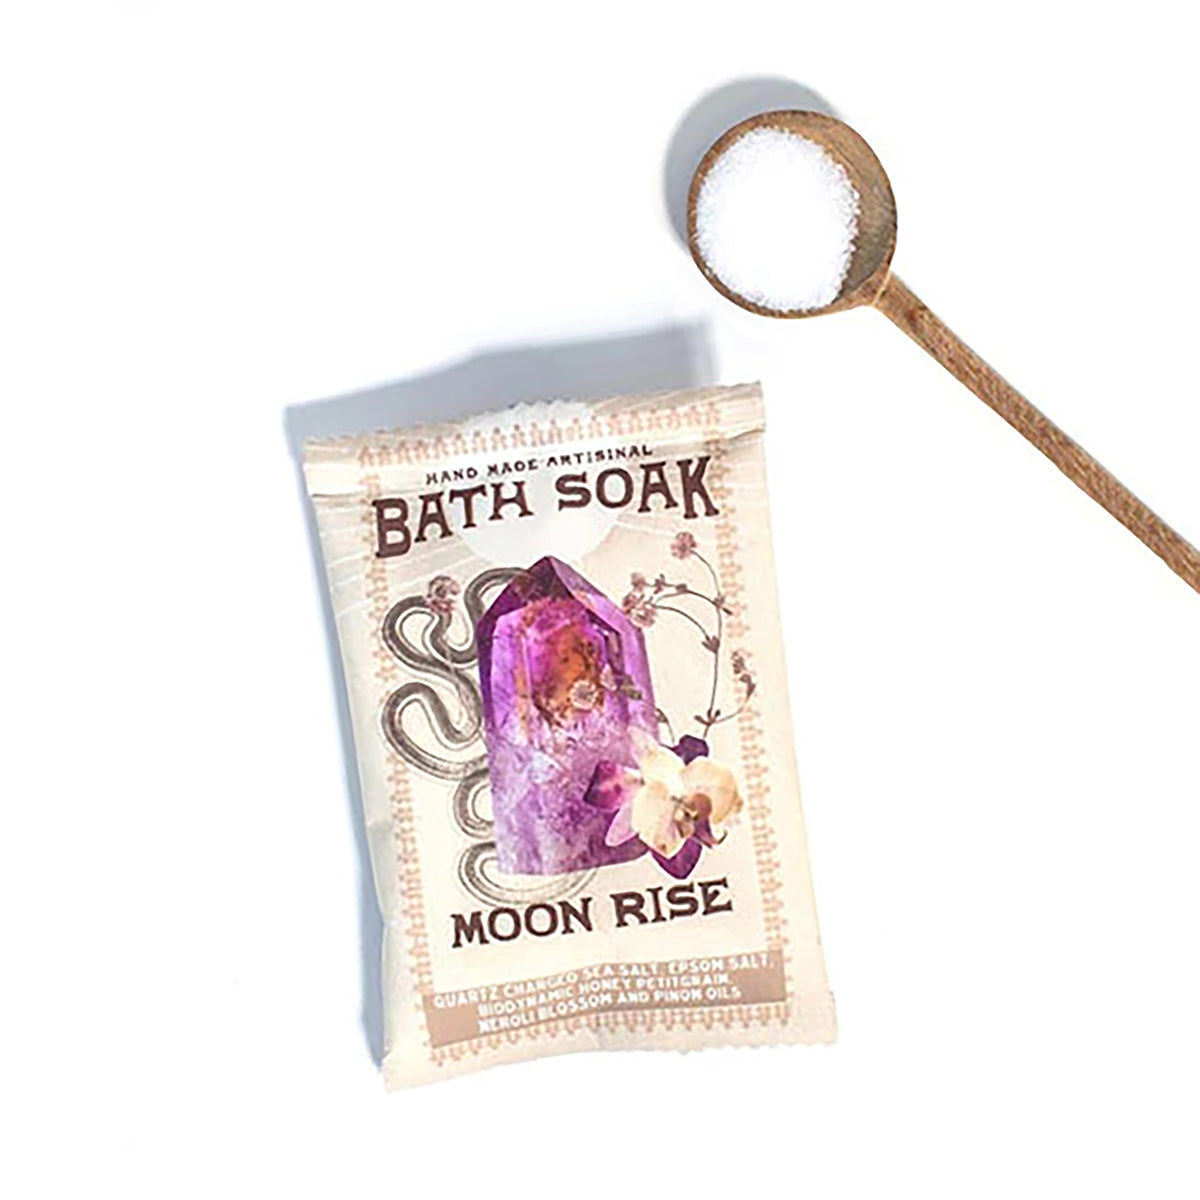 Moon Rise Bath Soak - honey, petitgrain, neroli blossom, and pinon oil